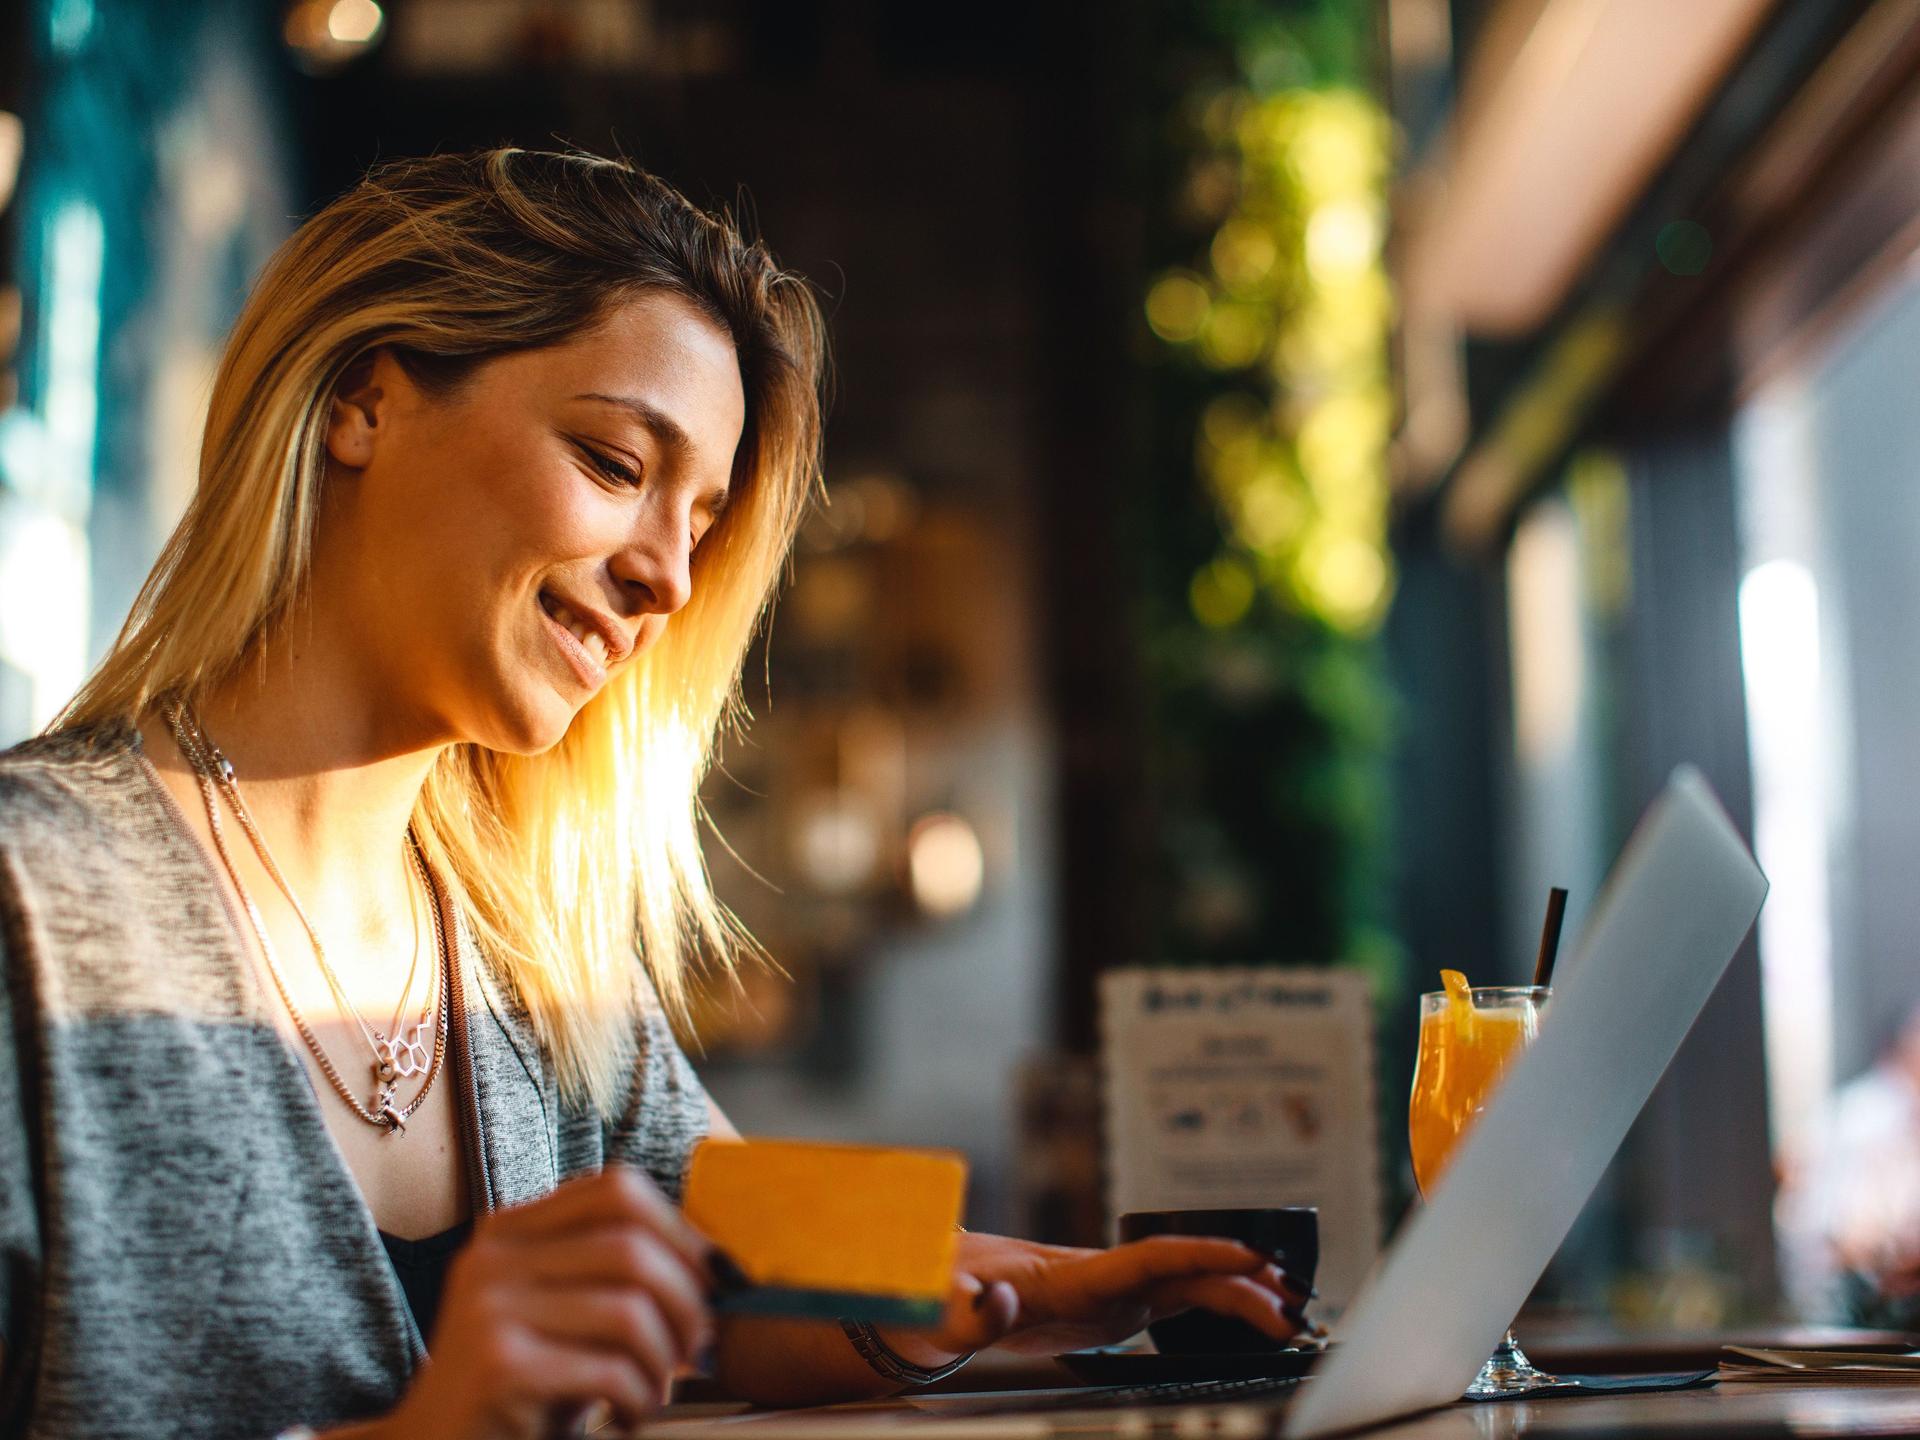 Frau in einen Cafe mit Laptop und Kreditkarte in der Hand.